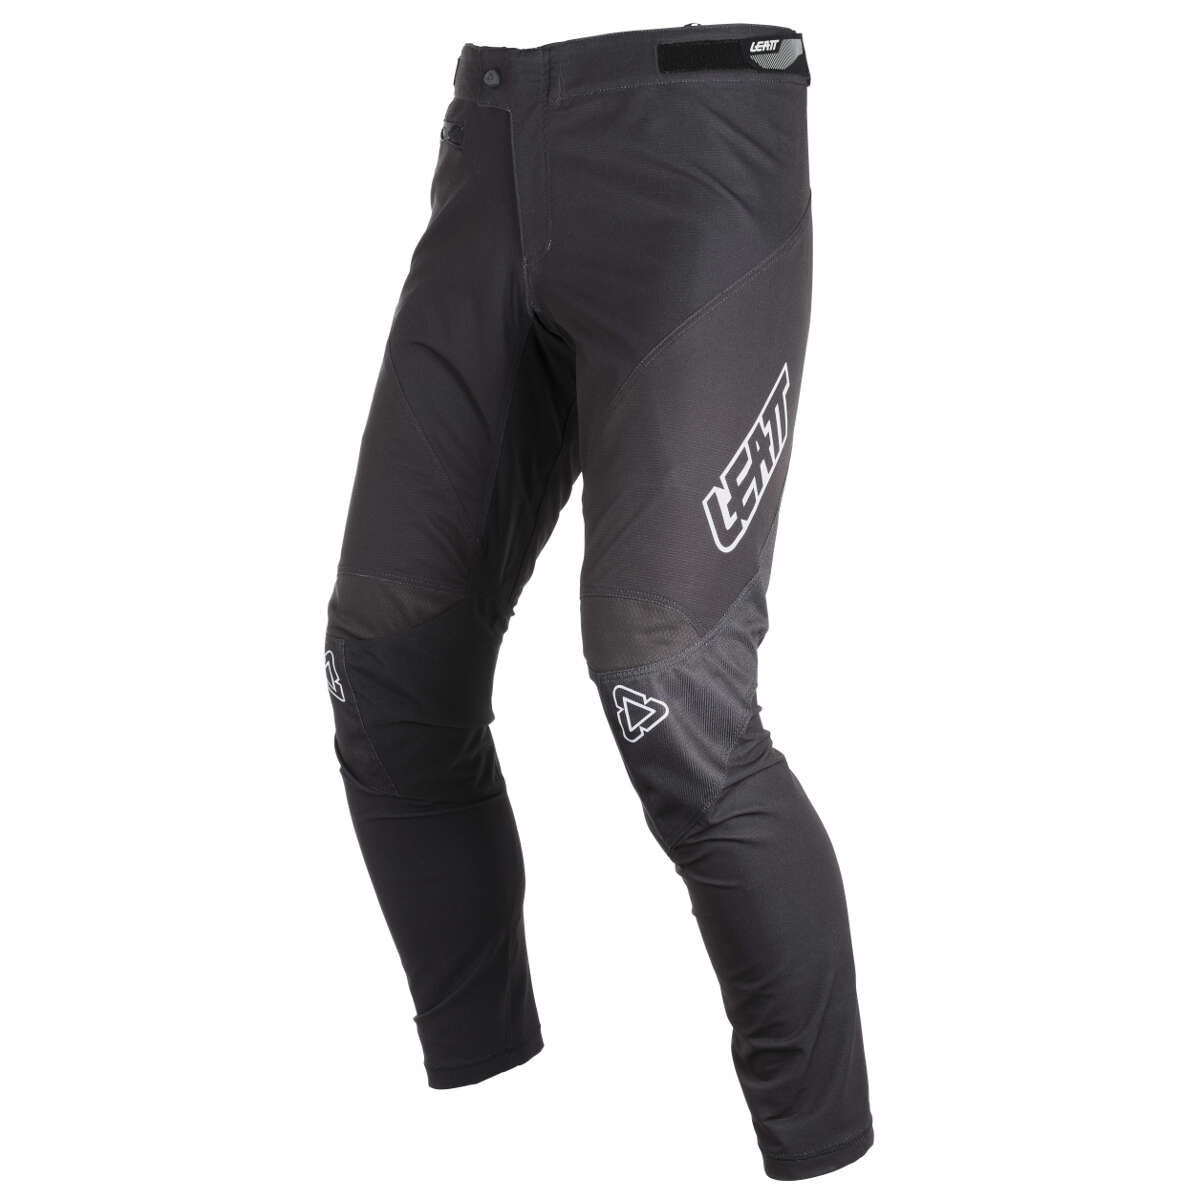 Leatt Downhill Pants DBX 4.0 Black